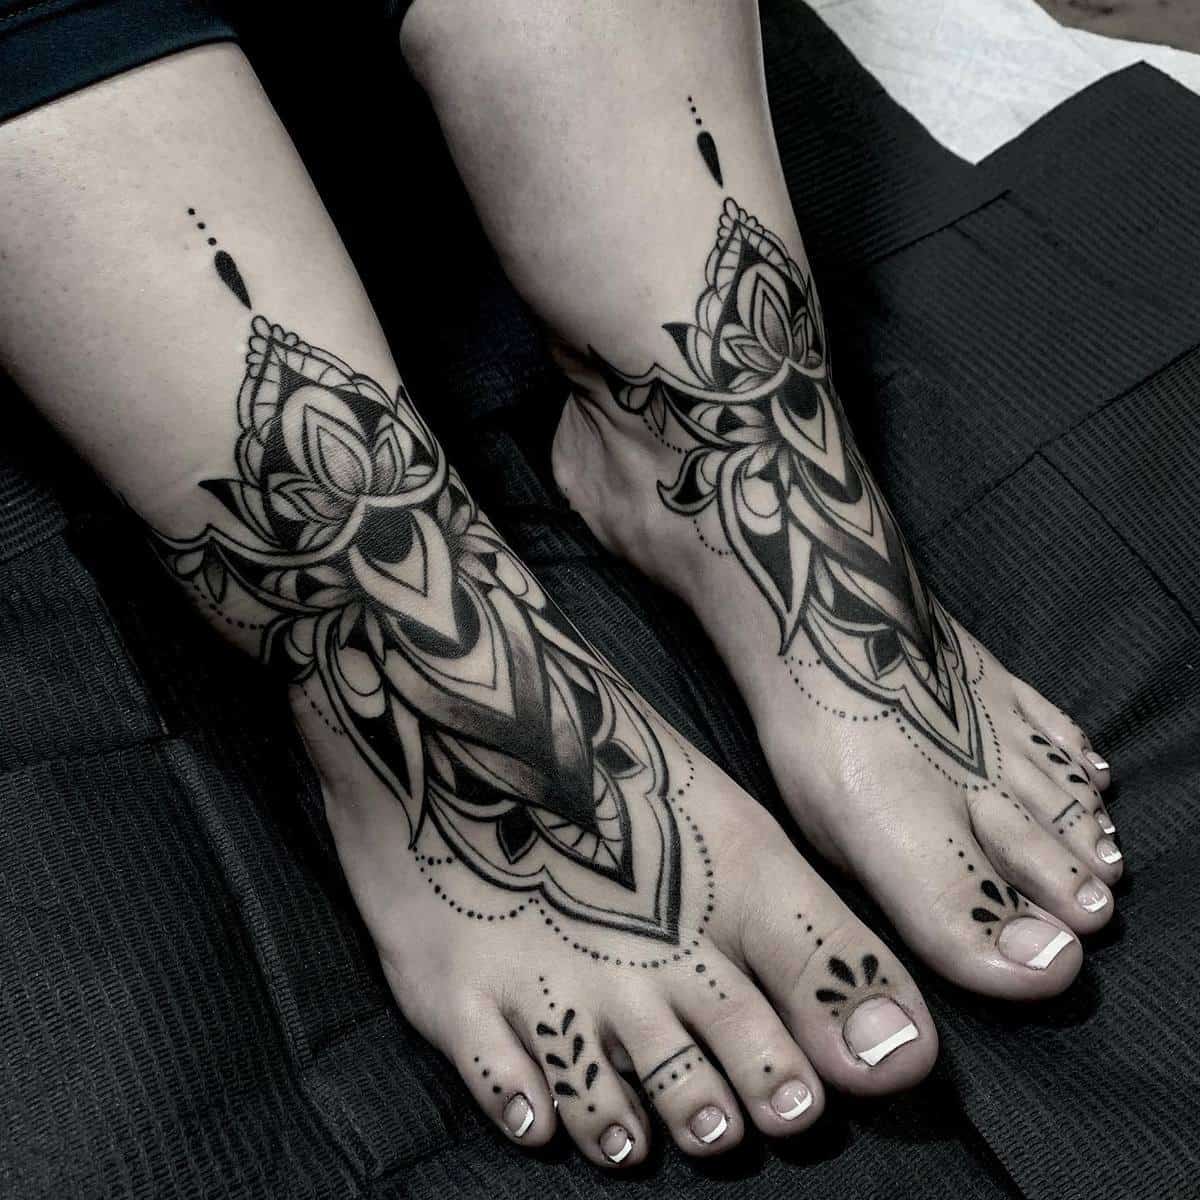 Foot Mandala Tattoos thattattoogirl